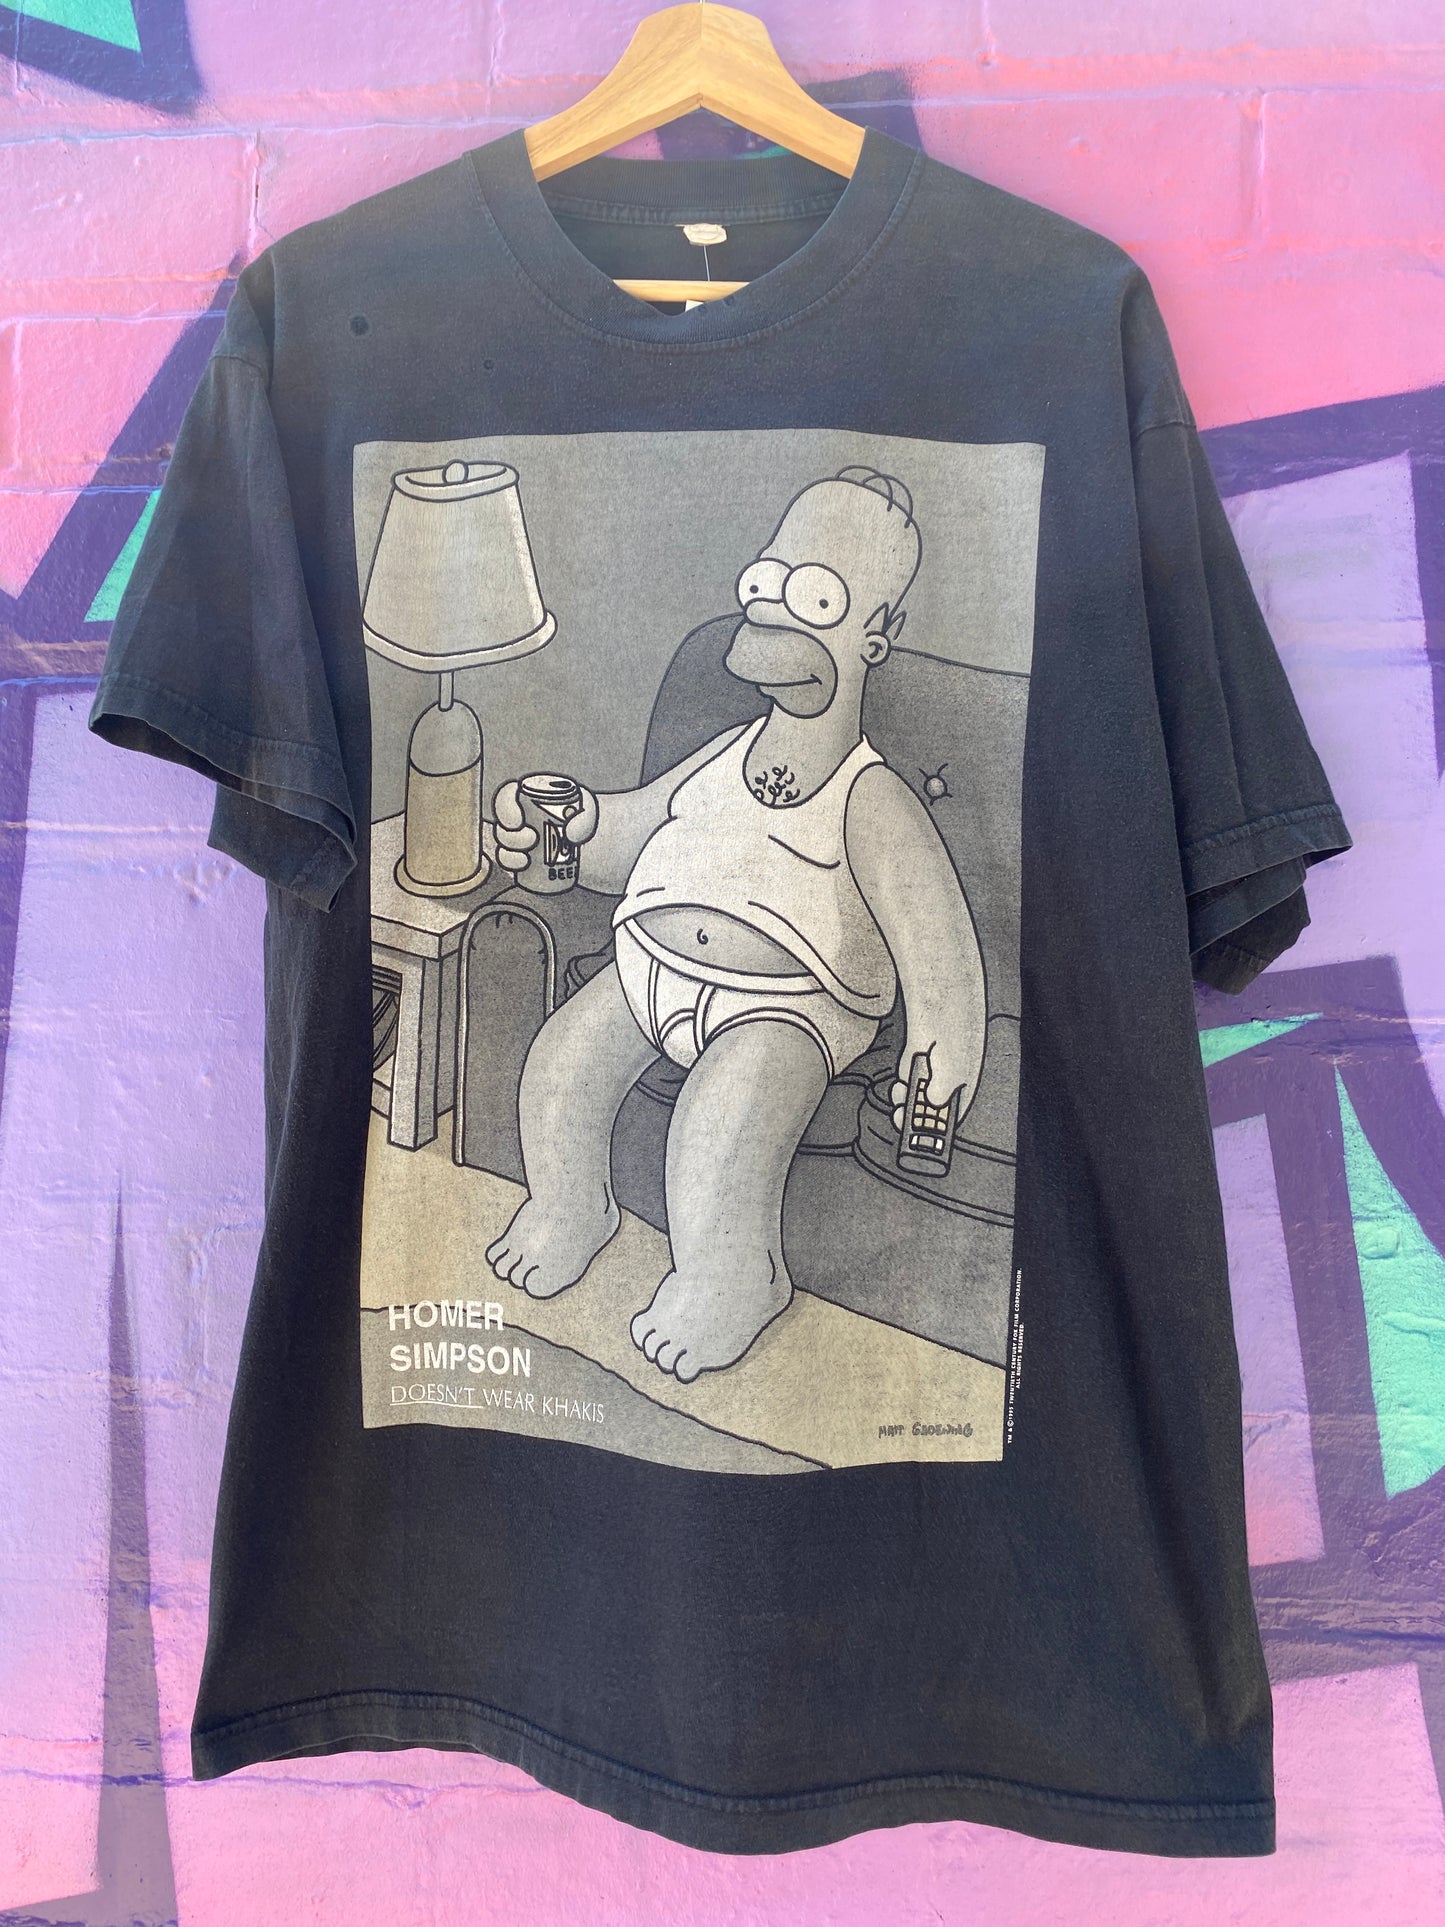 L - 1995 Homer Simpson Doesn't Wear Khakis